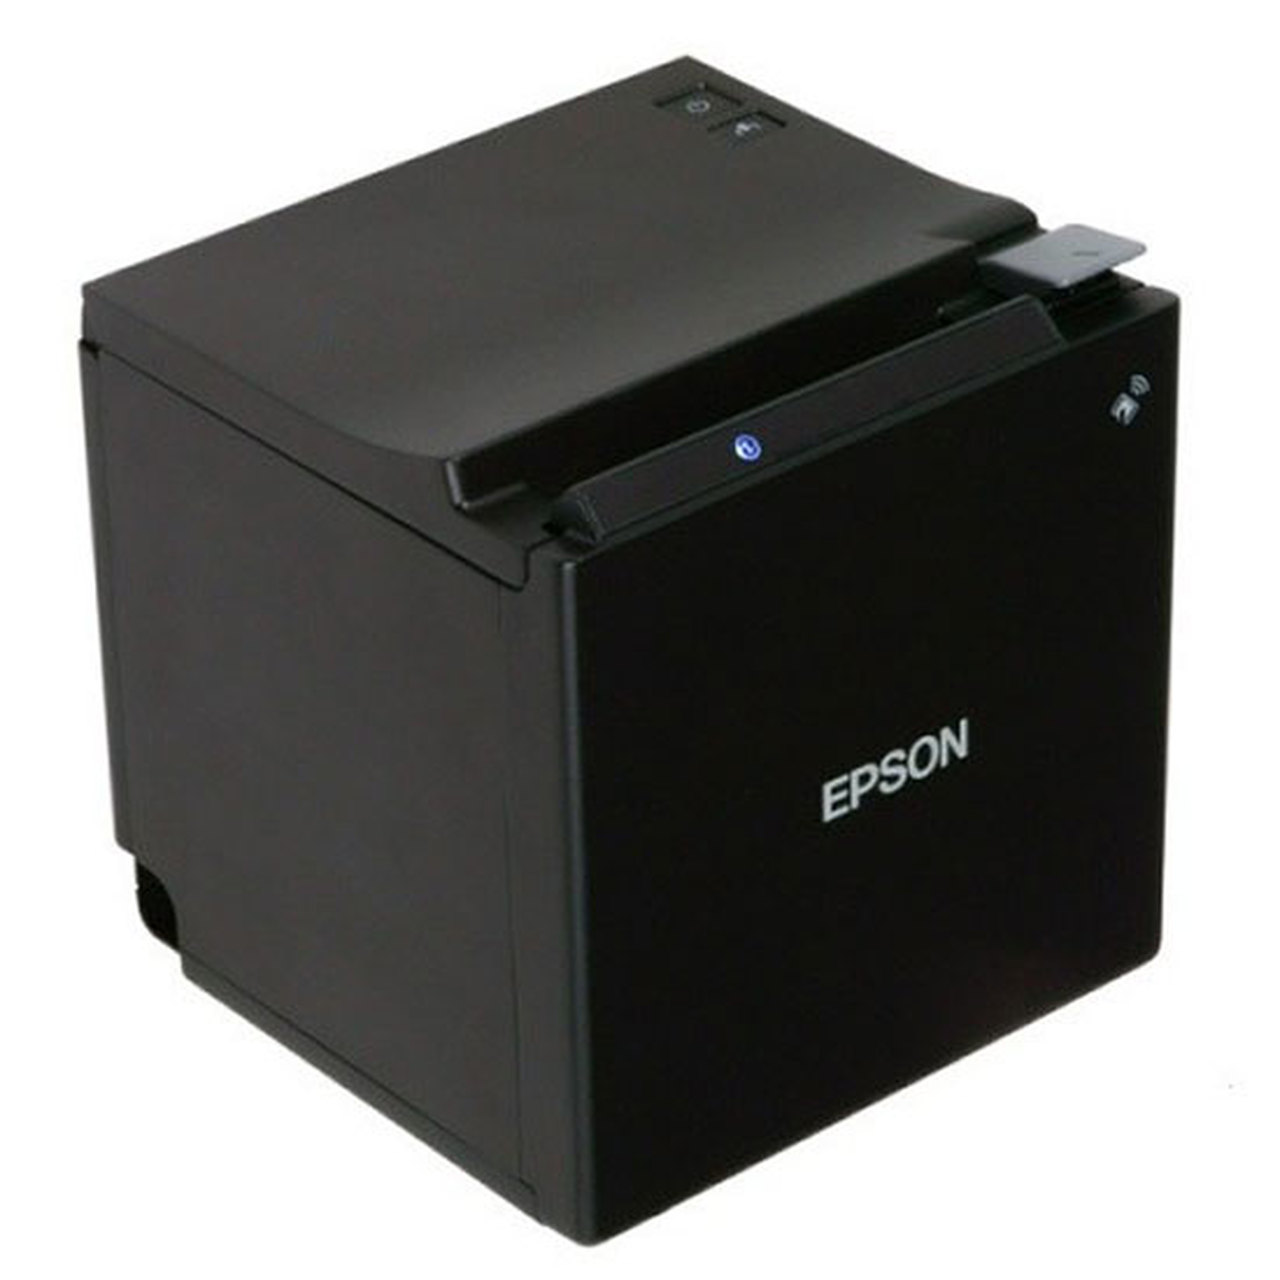 Epson TM-M30 Bluetooth Printer